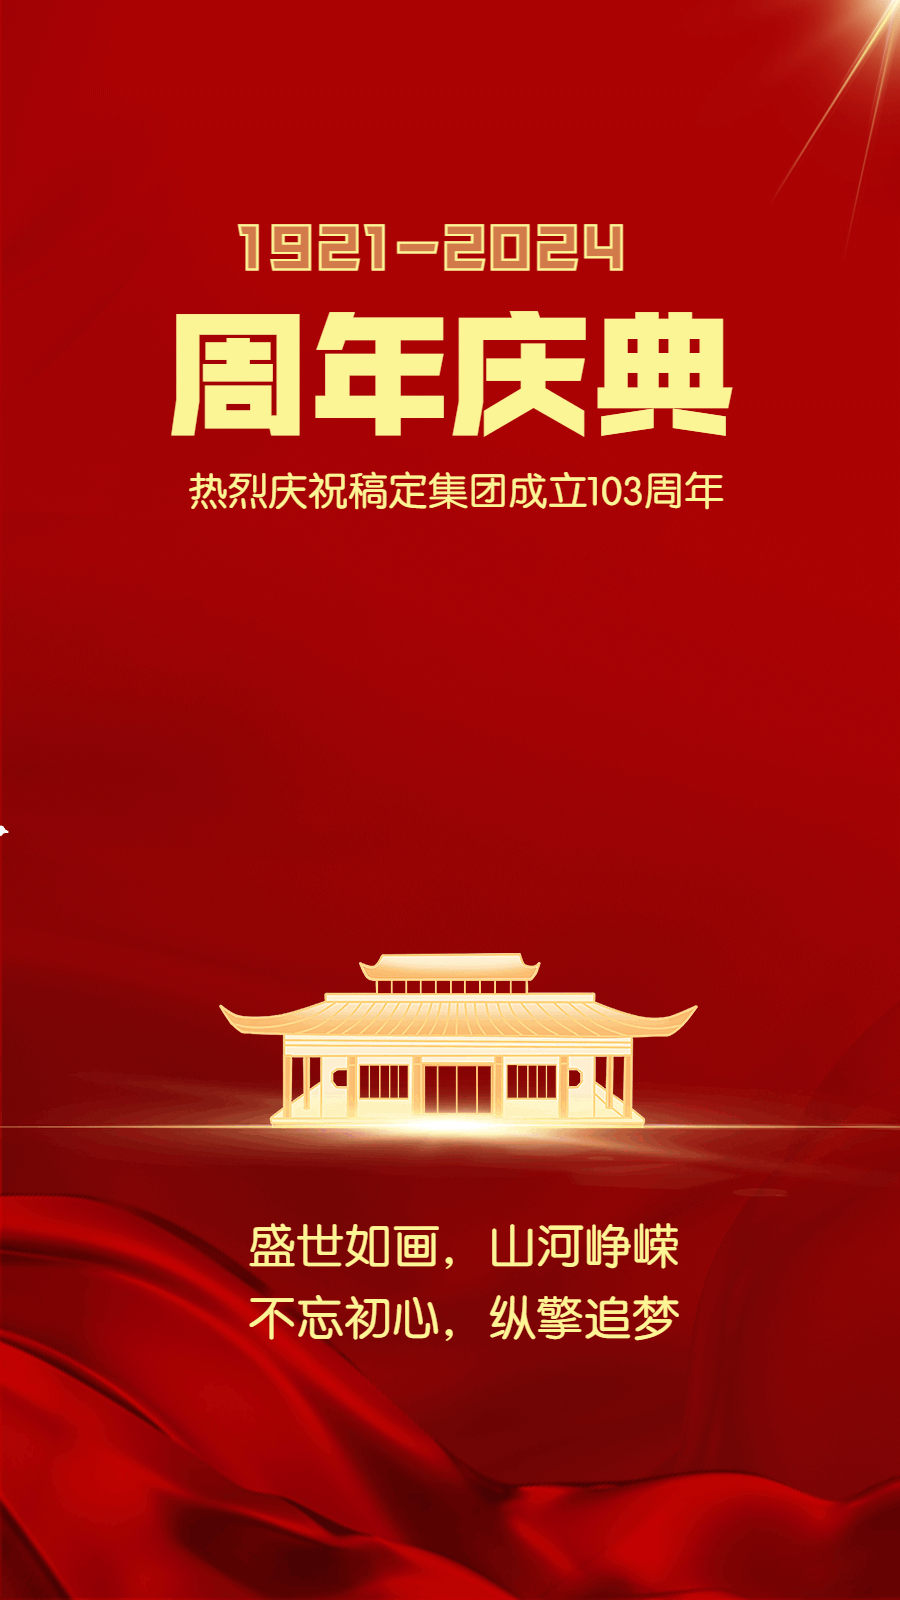 建党节企业红金风节日祝福动态海报